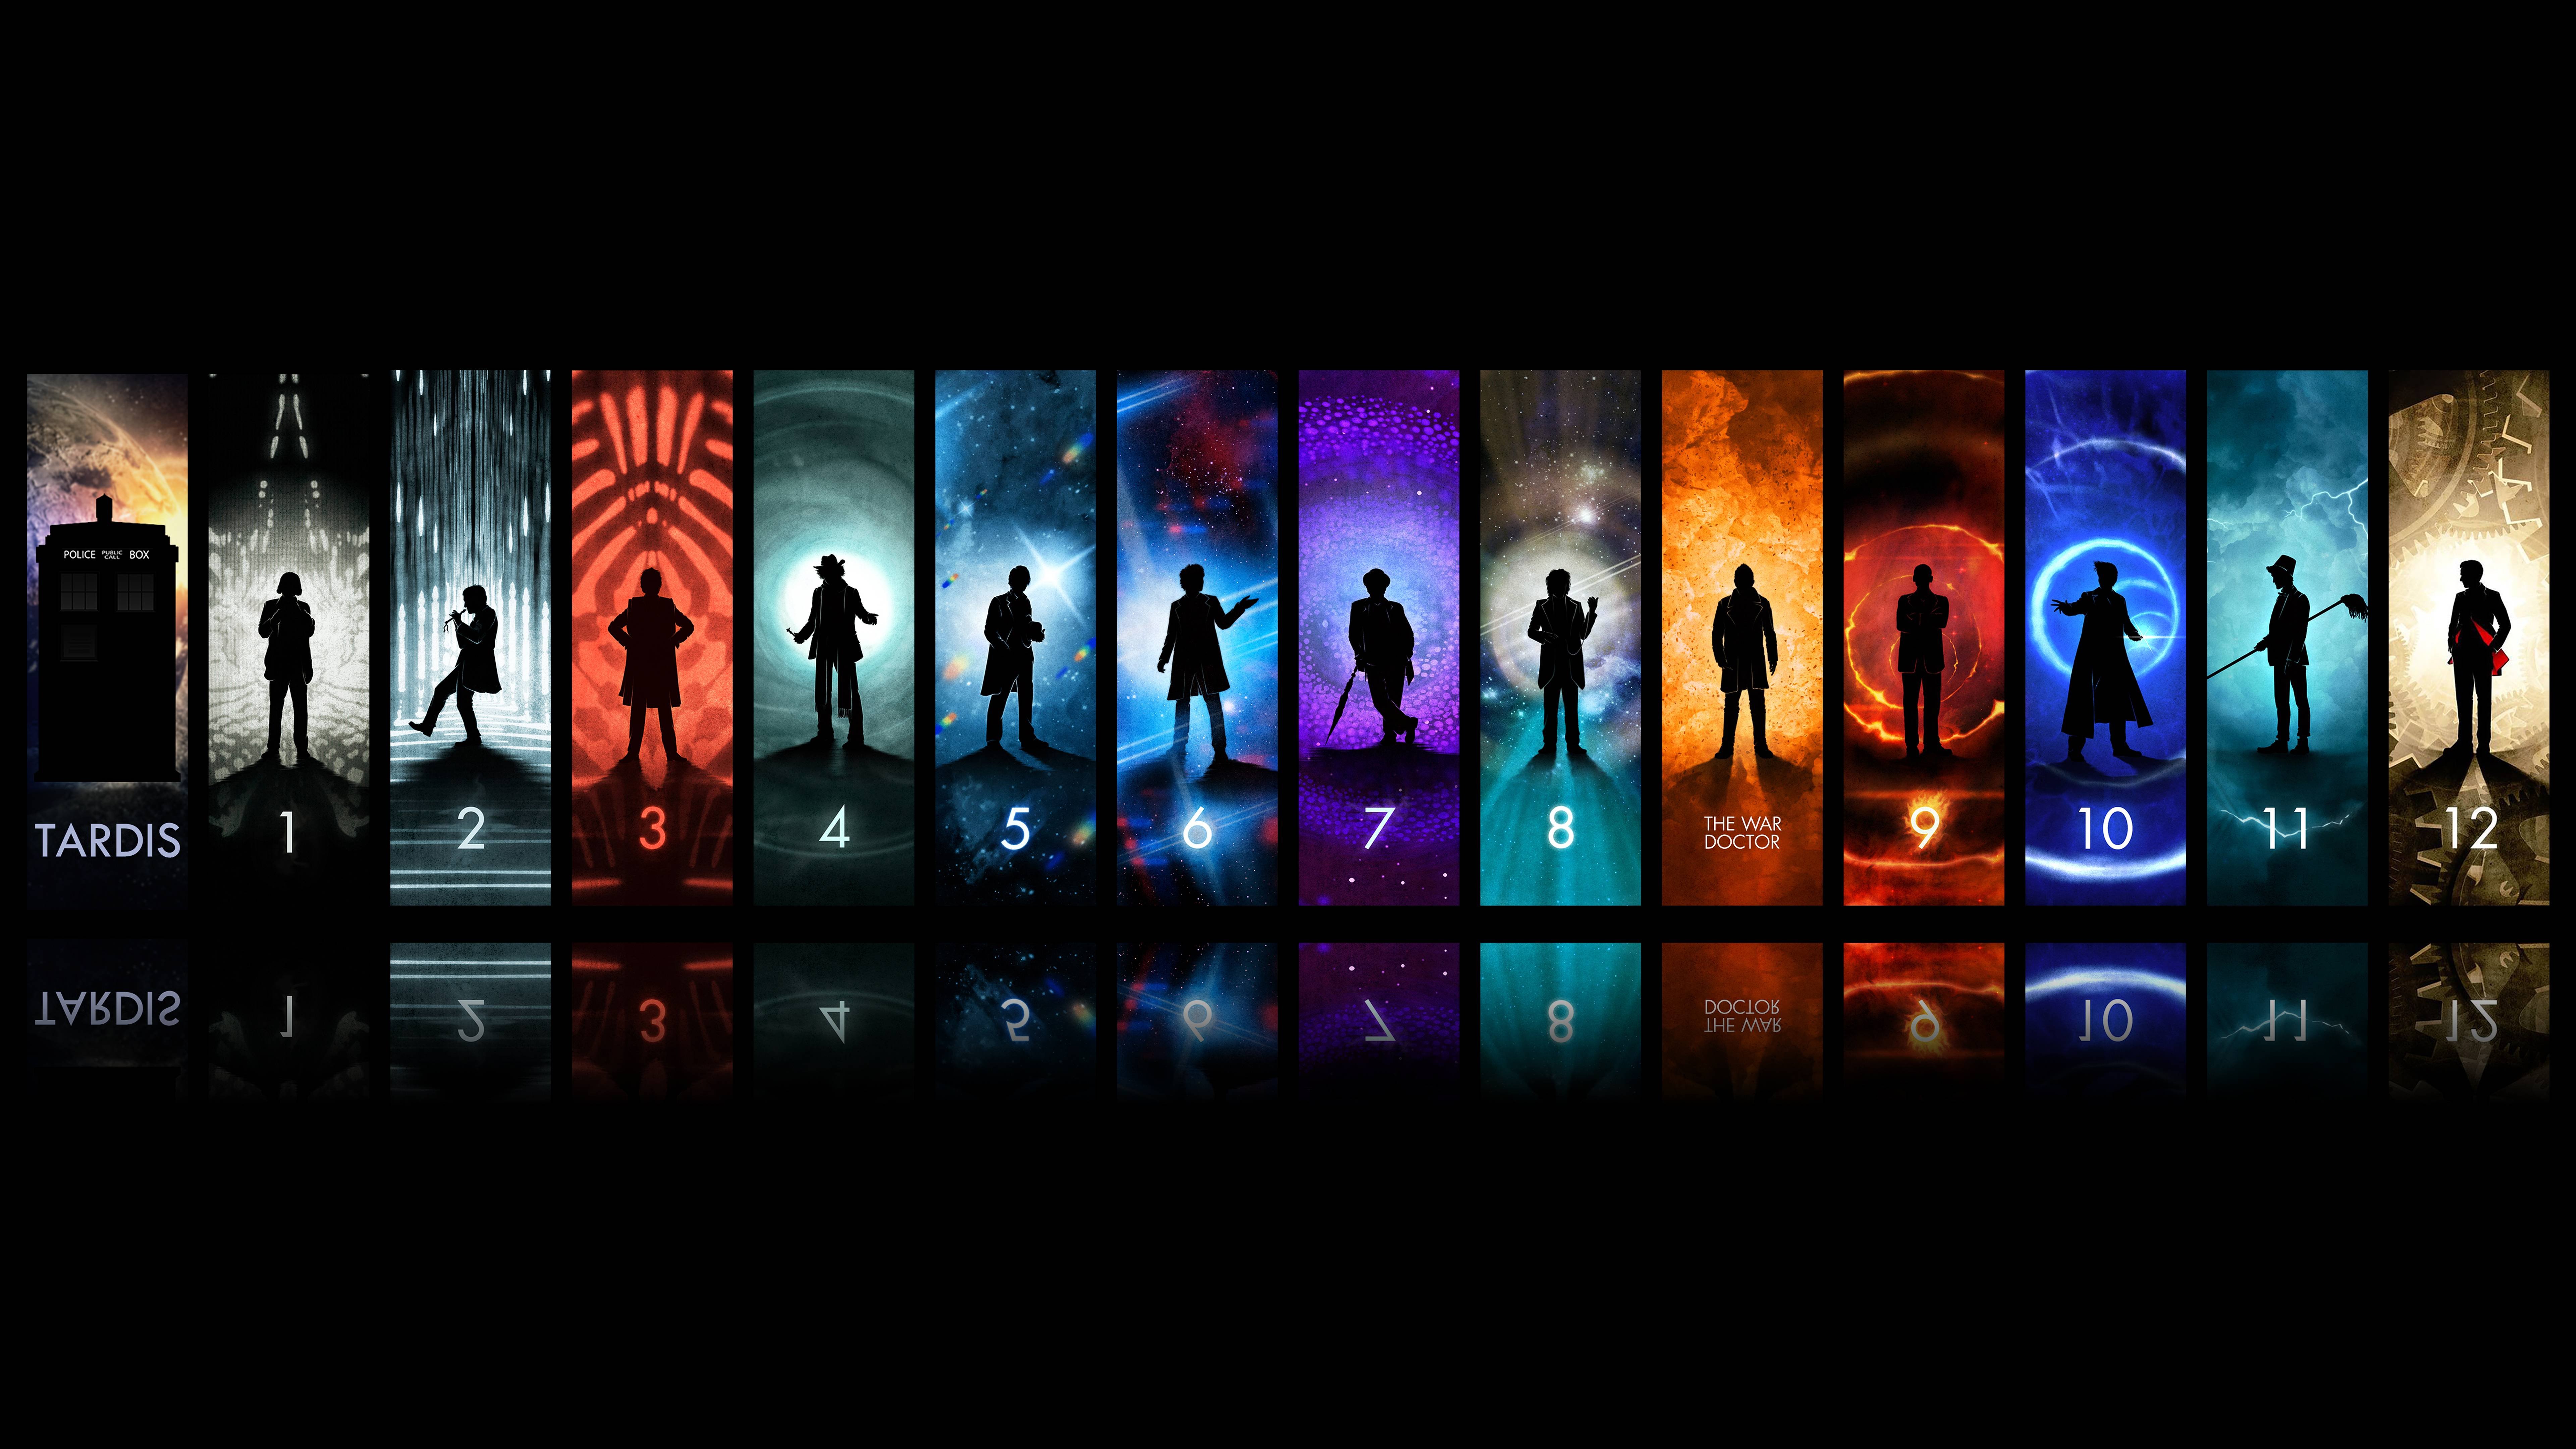 doctor, Who, Bbc, Sci fi, Futuristic, Series, Comedy, Adventure, Drama, 1dwho, Tardis Wallpaper